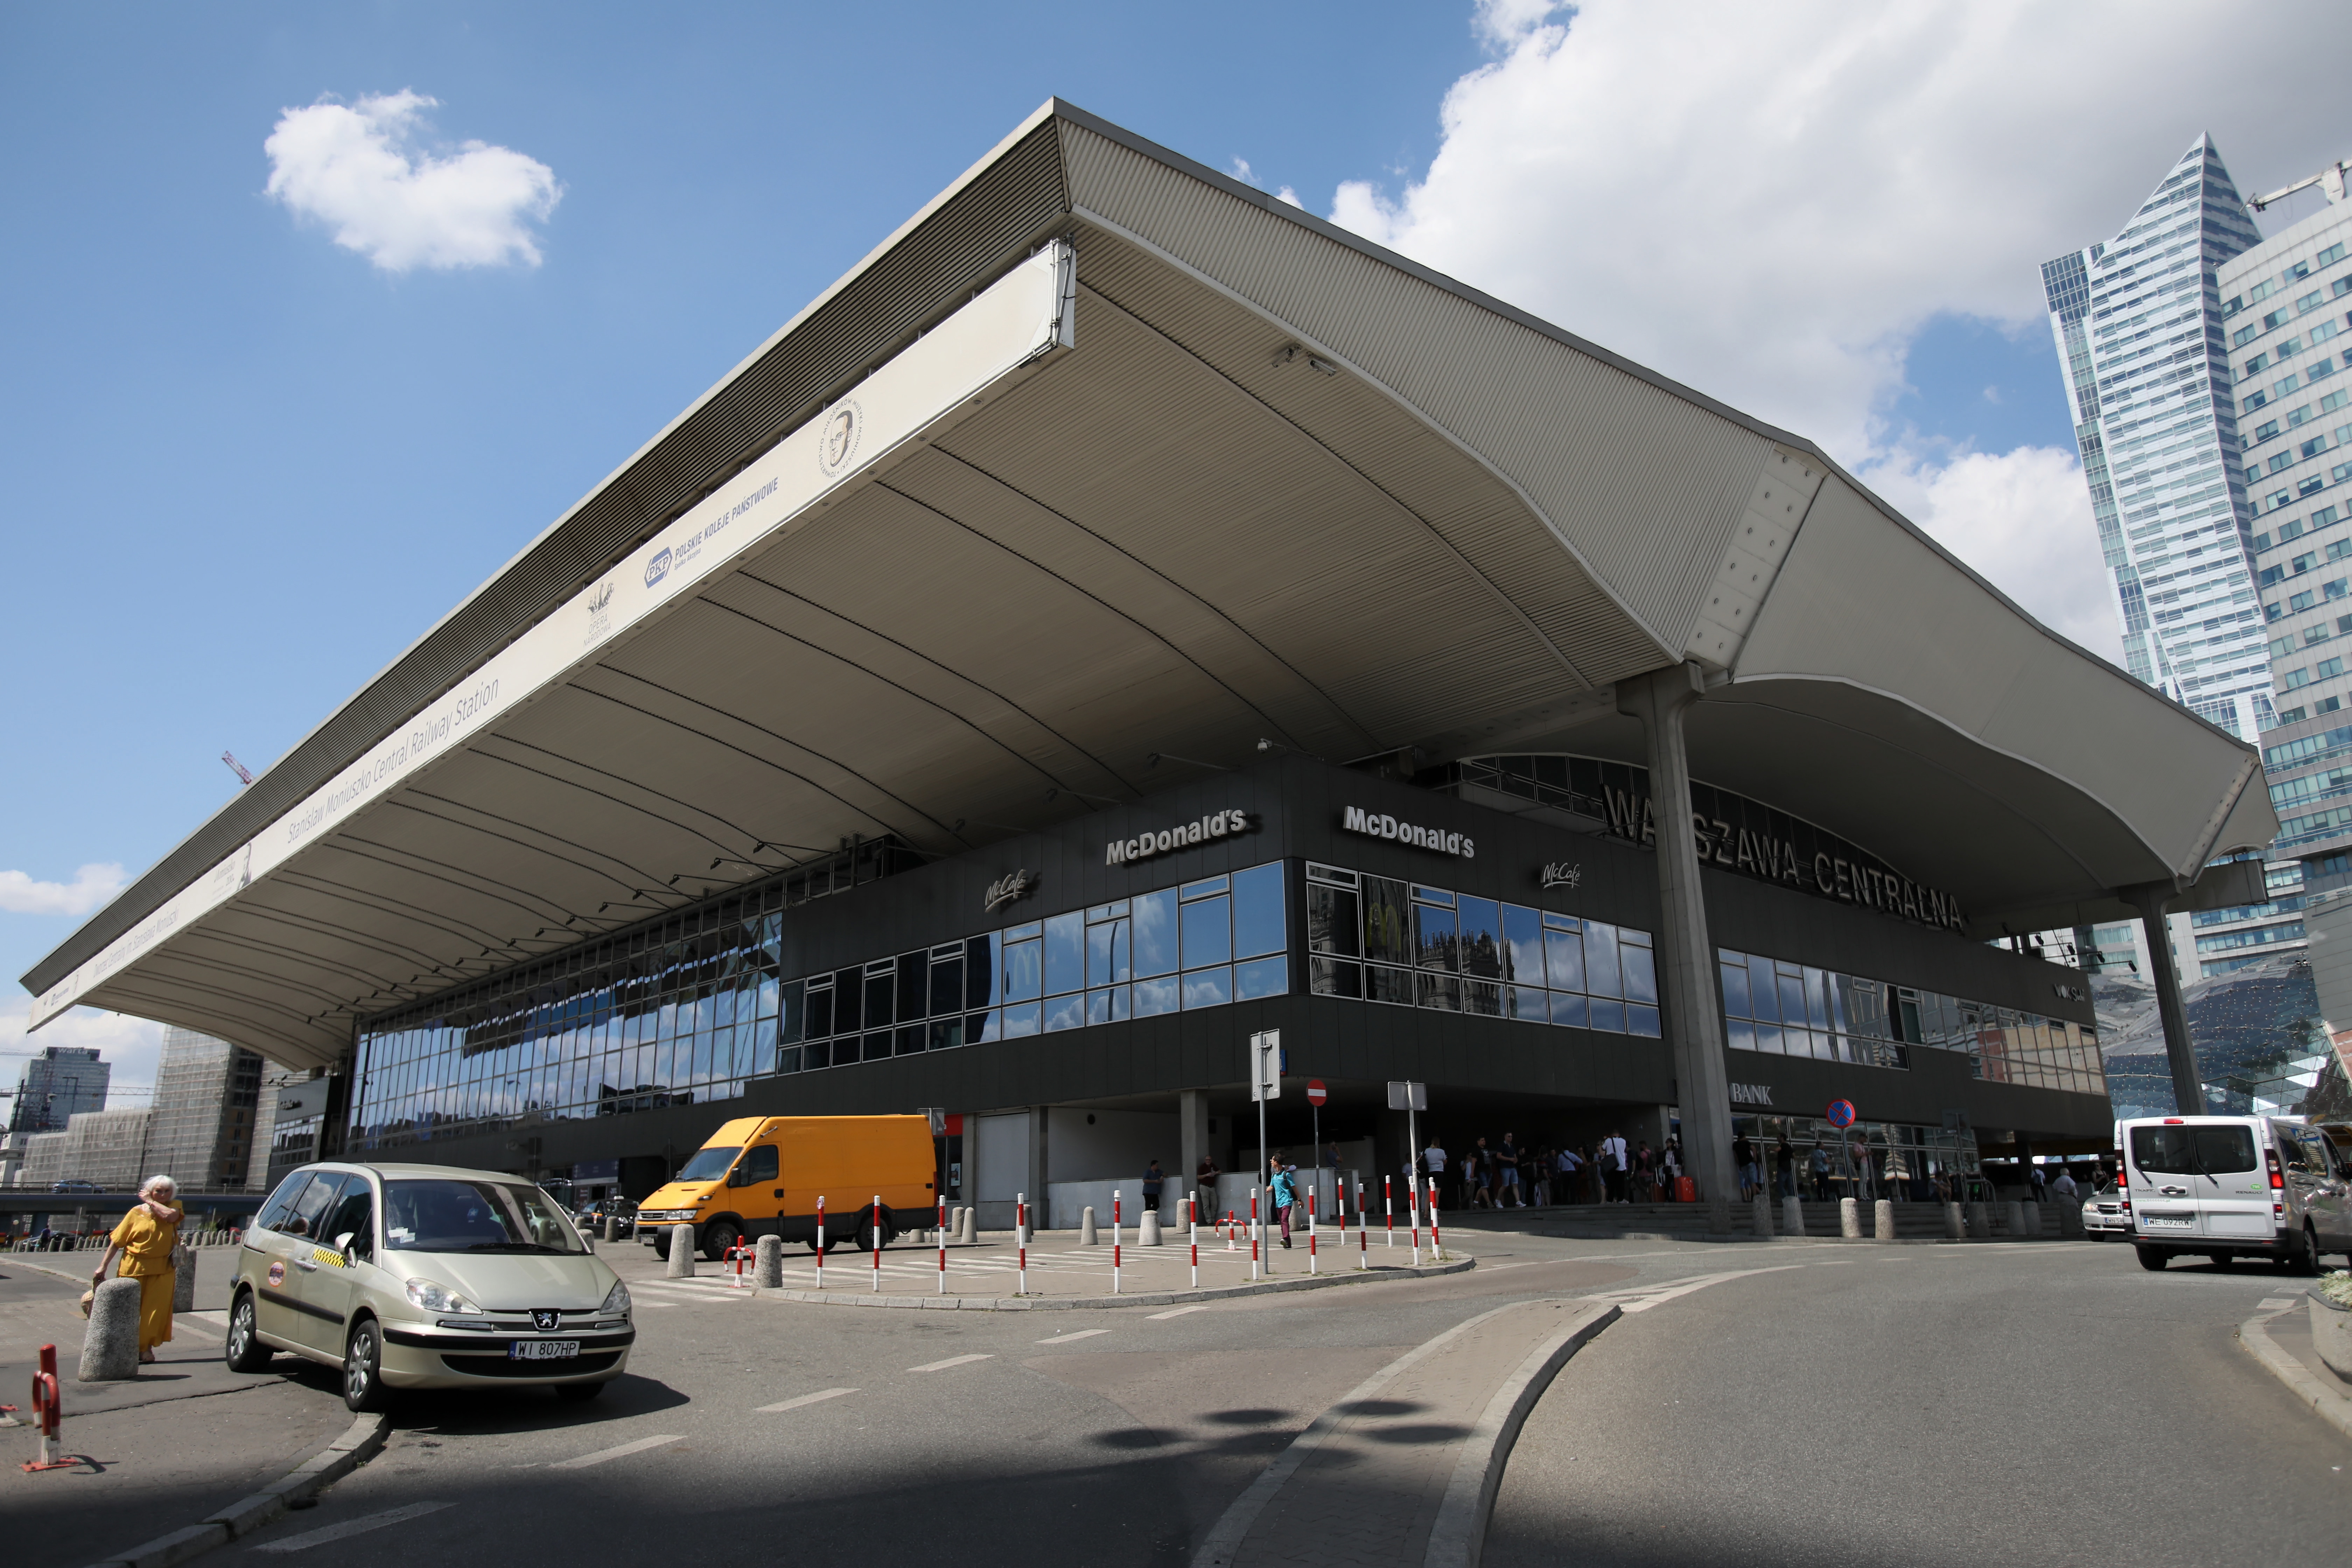 Dworzec Centralny w Warszawie został wpisany do rejestru zabytków -  Transport i logistyka - Forbes.pl